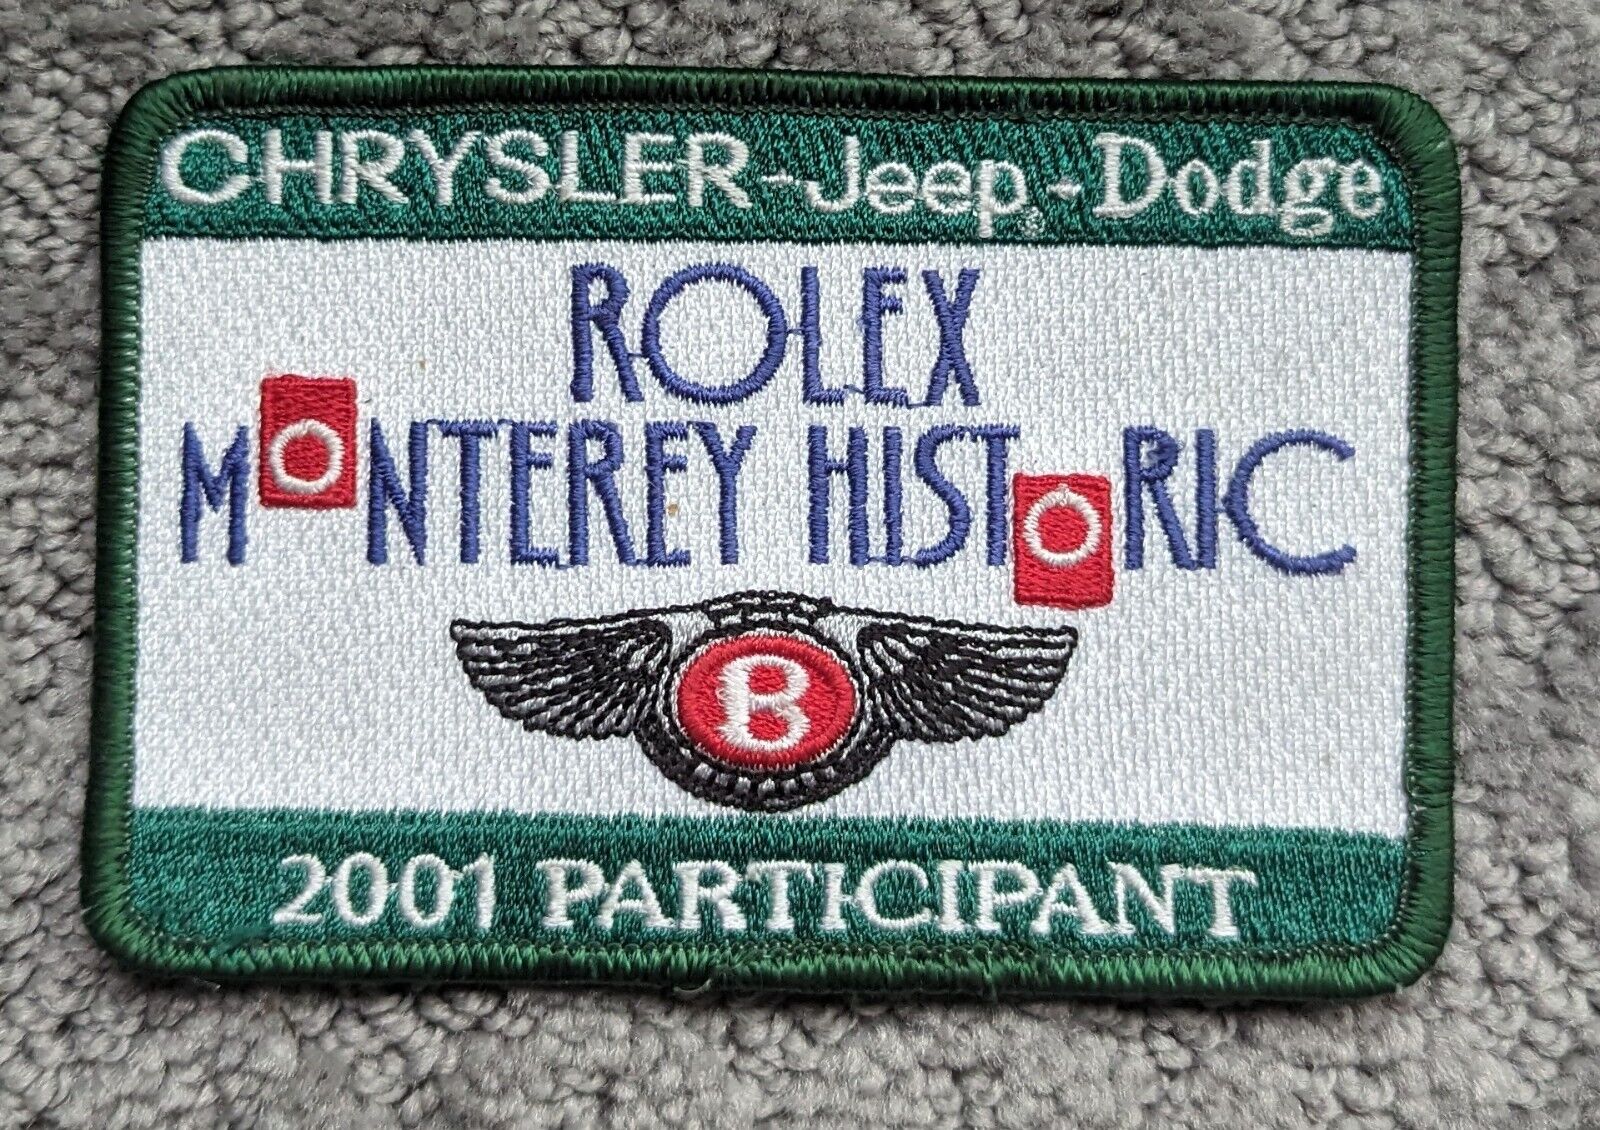 ROLEX MONTEREY HISTORIC - BENTLEY - 2001 PARTICIPANT Patch